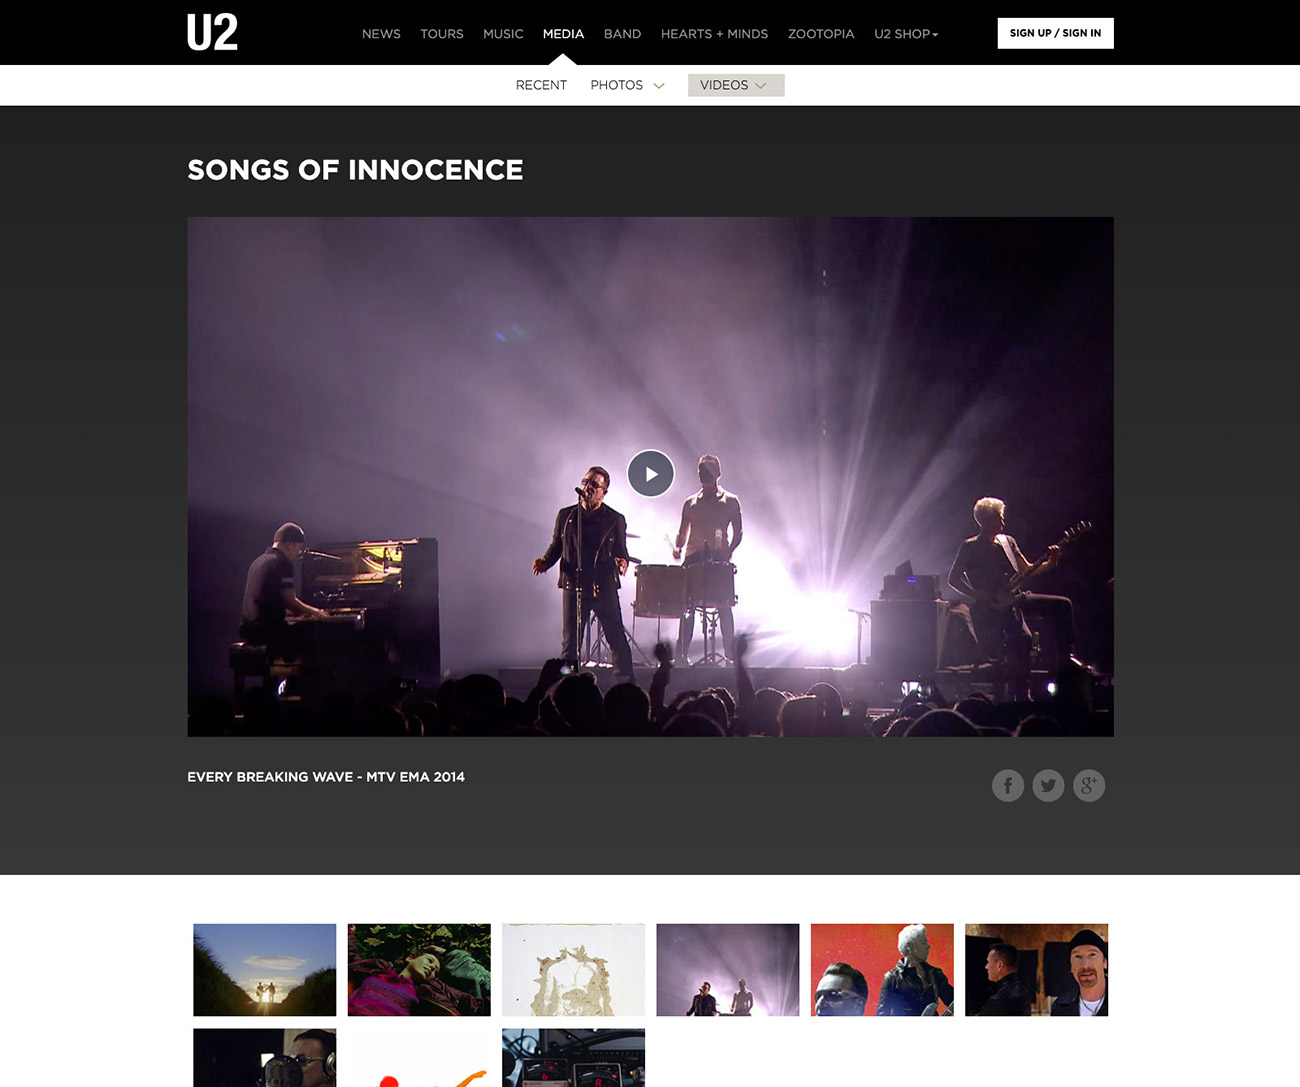 U2 media page